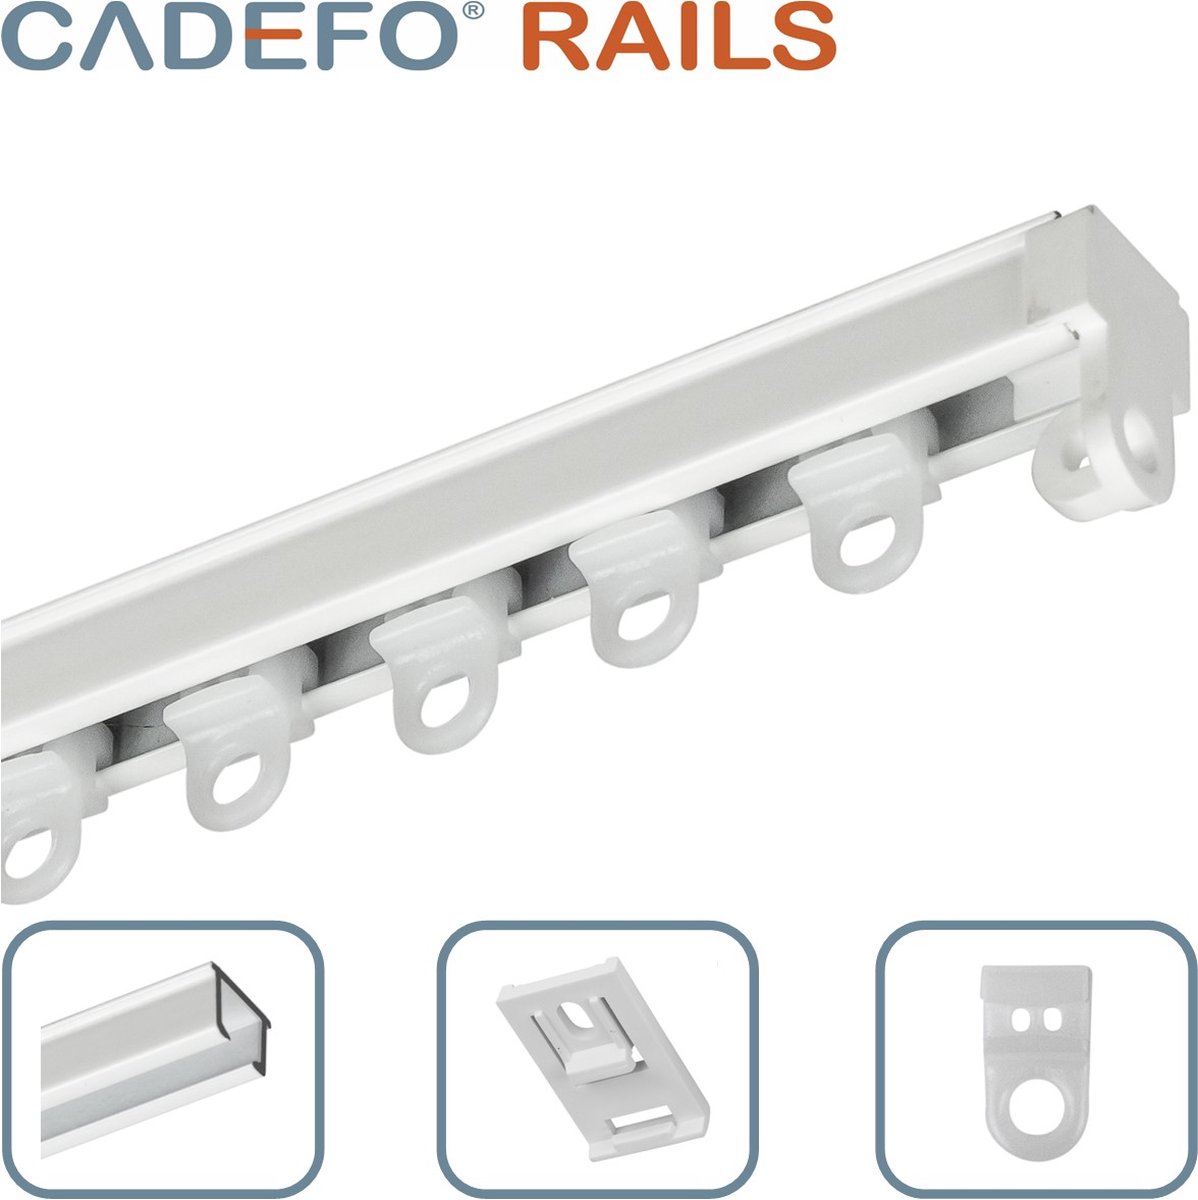 CADEFO RAILS (251 - 300 cm) Gordijnrails - Compleet op maat! - UIT 1 STUK - Leverbaar tot 6 meter - Plafondbevestiging - Lengte 268 cm